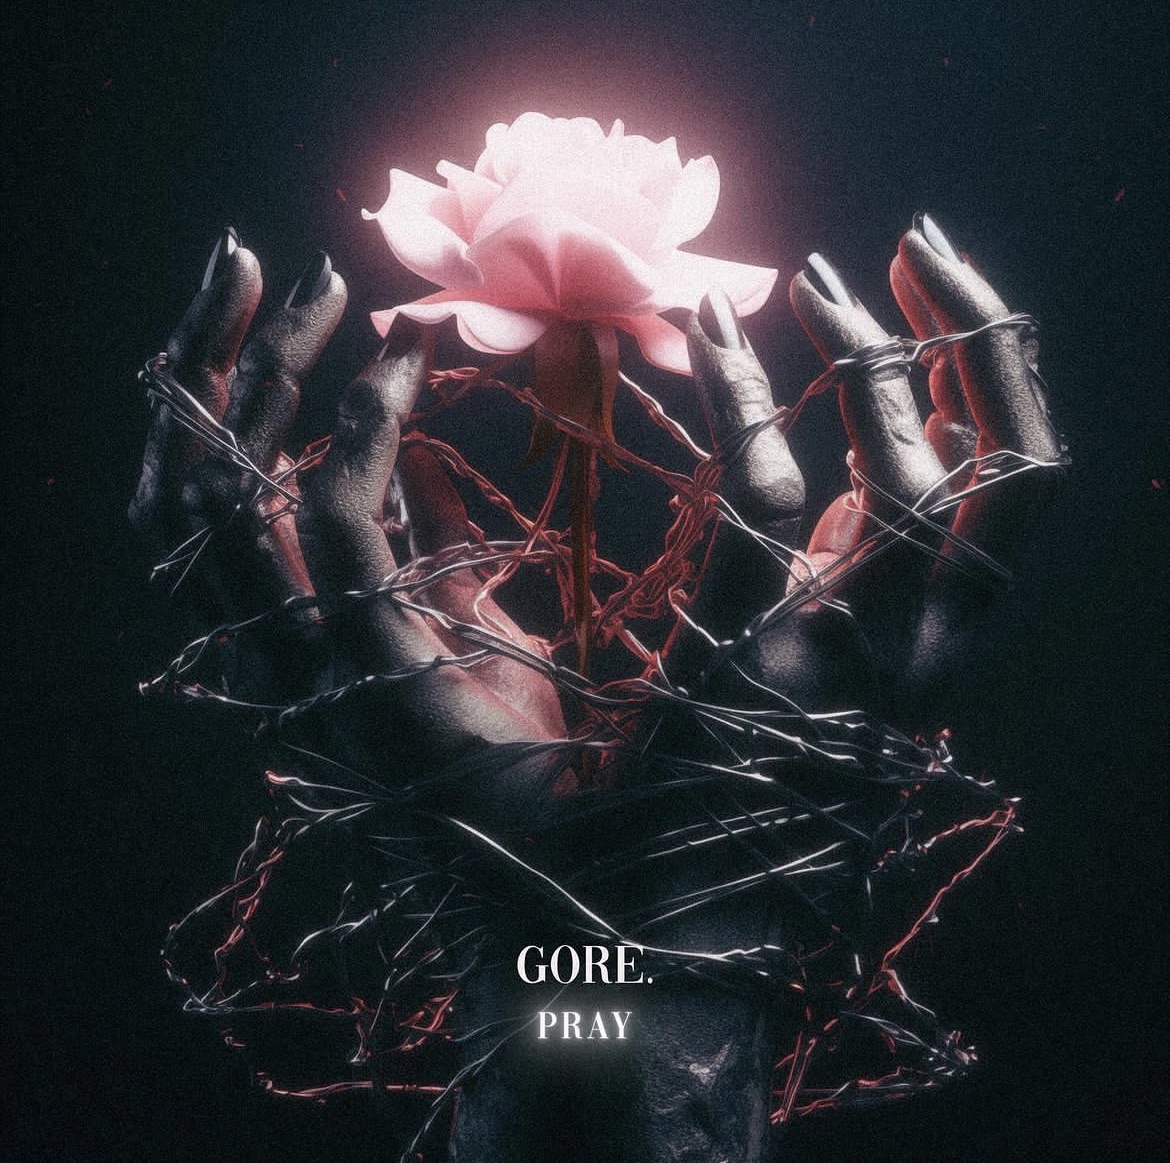 2025年に流行るメタルコアバンド『Gore.』を観測。